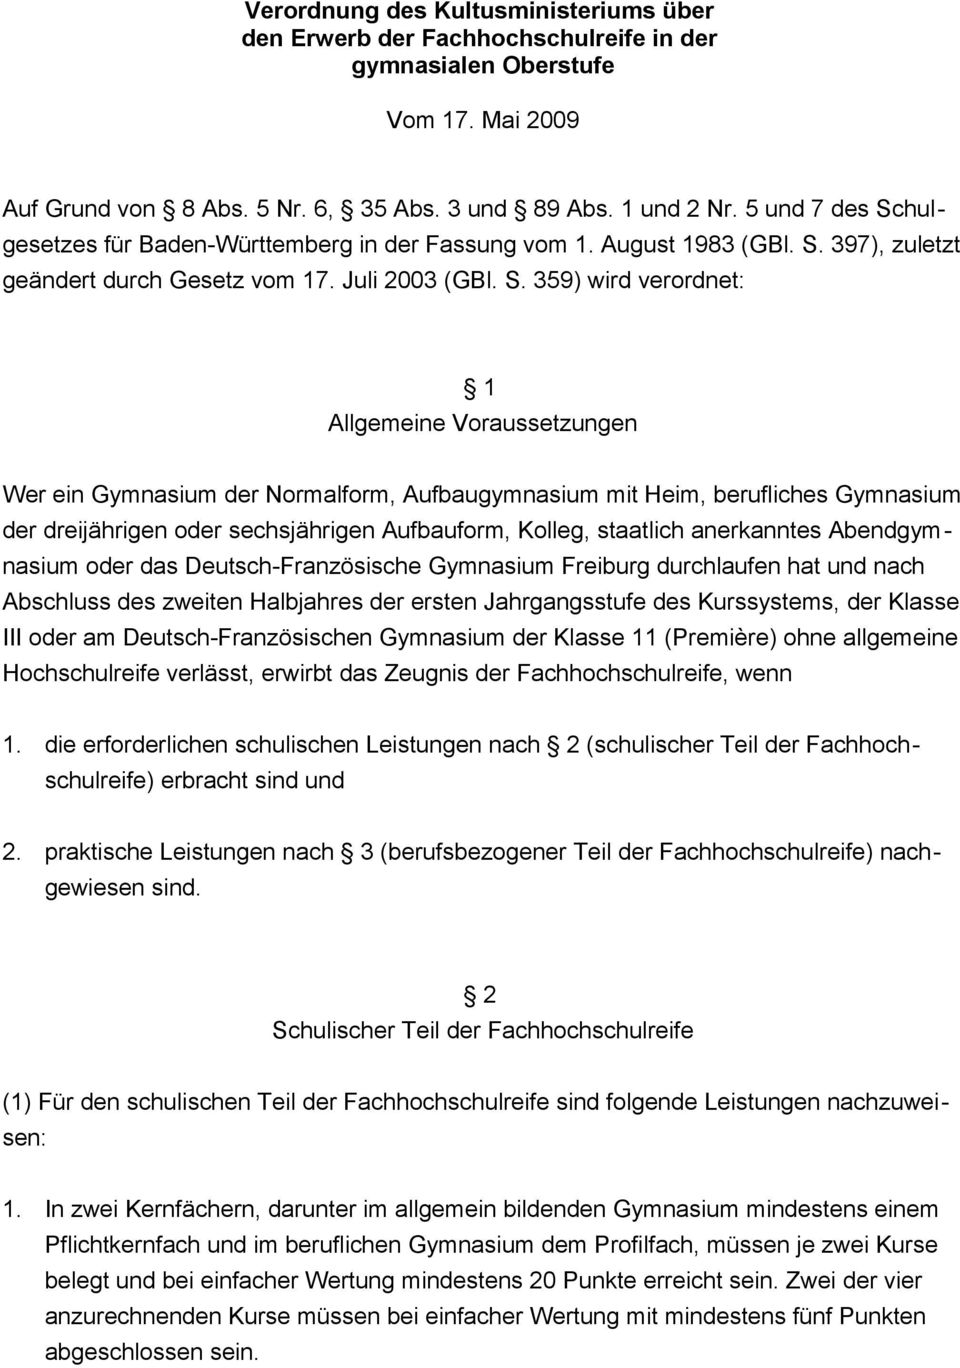 hulgesetzes für Baden-Württemberg in der Fassung vom 1. August 1983 (GBl. S.